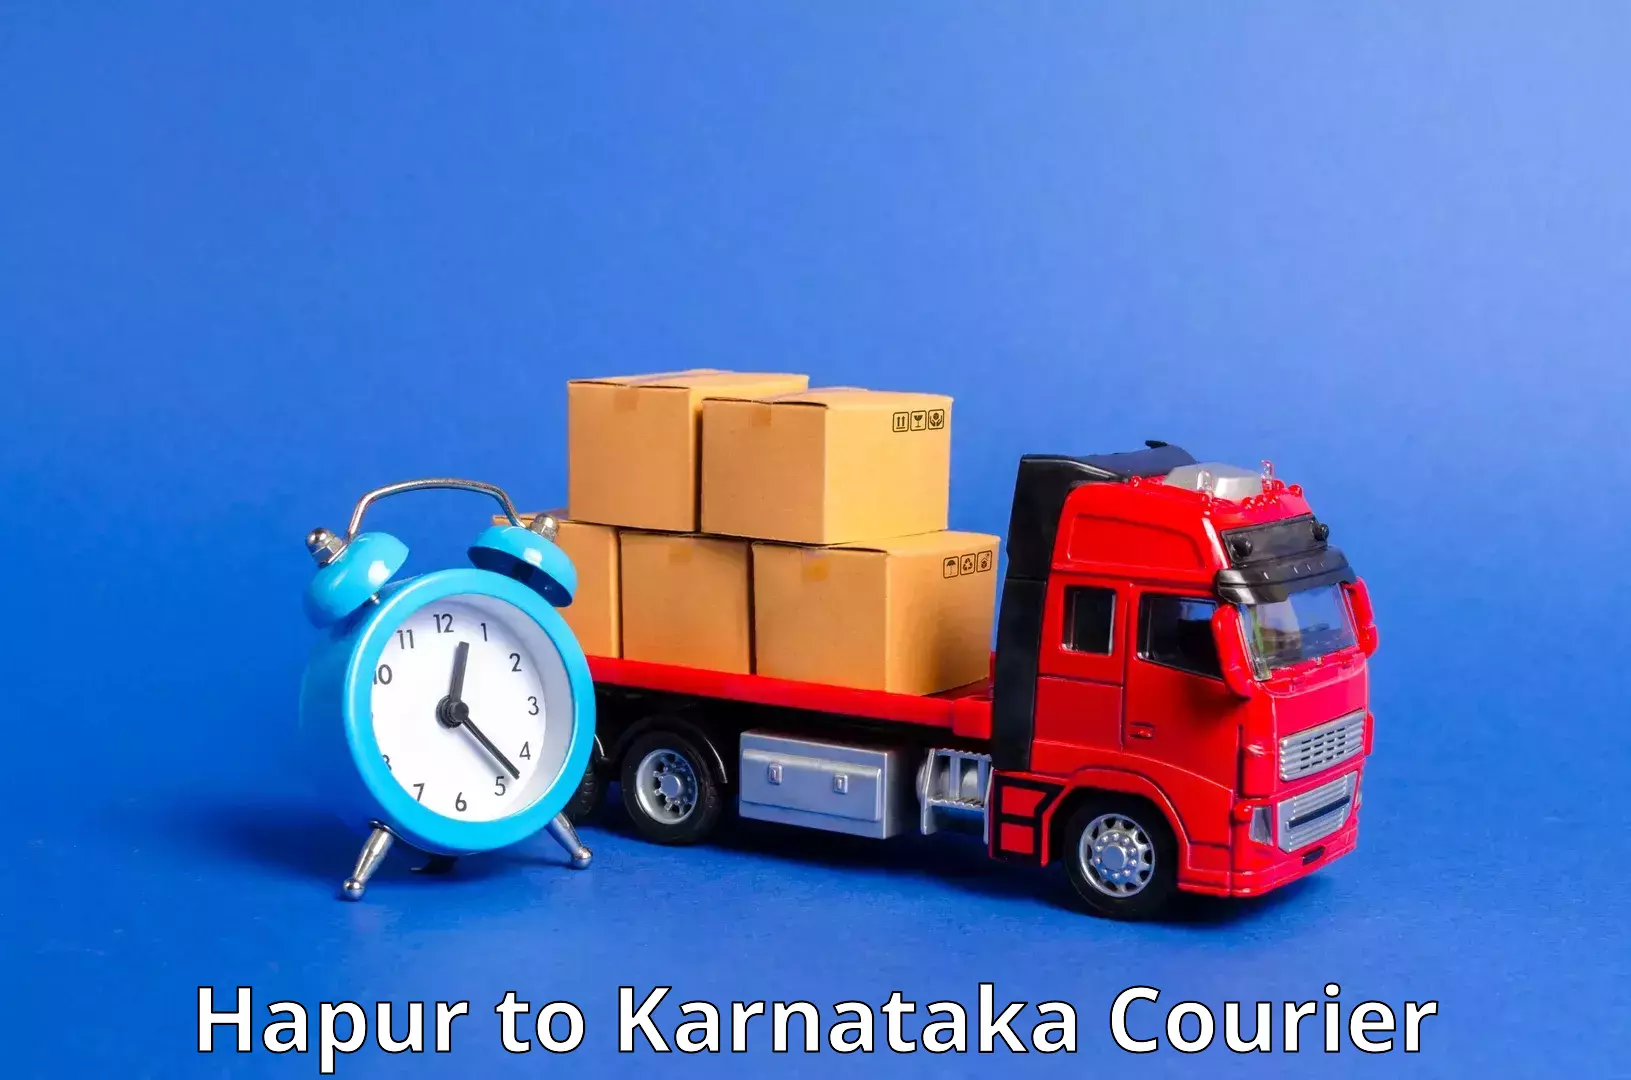 Digital courier platforms Hapur to Bangarapet